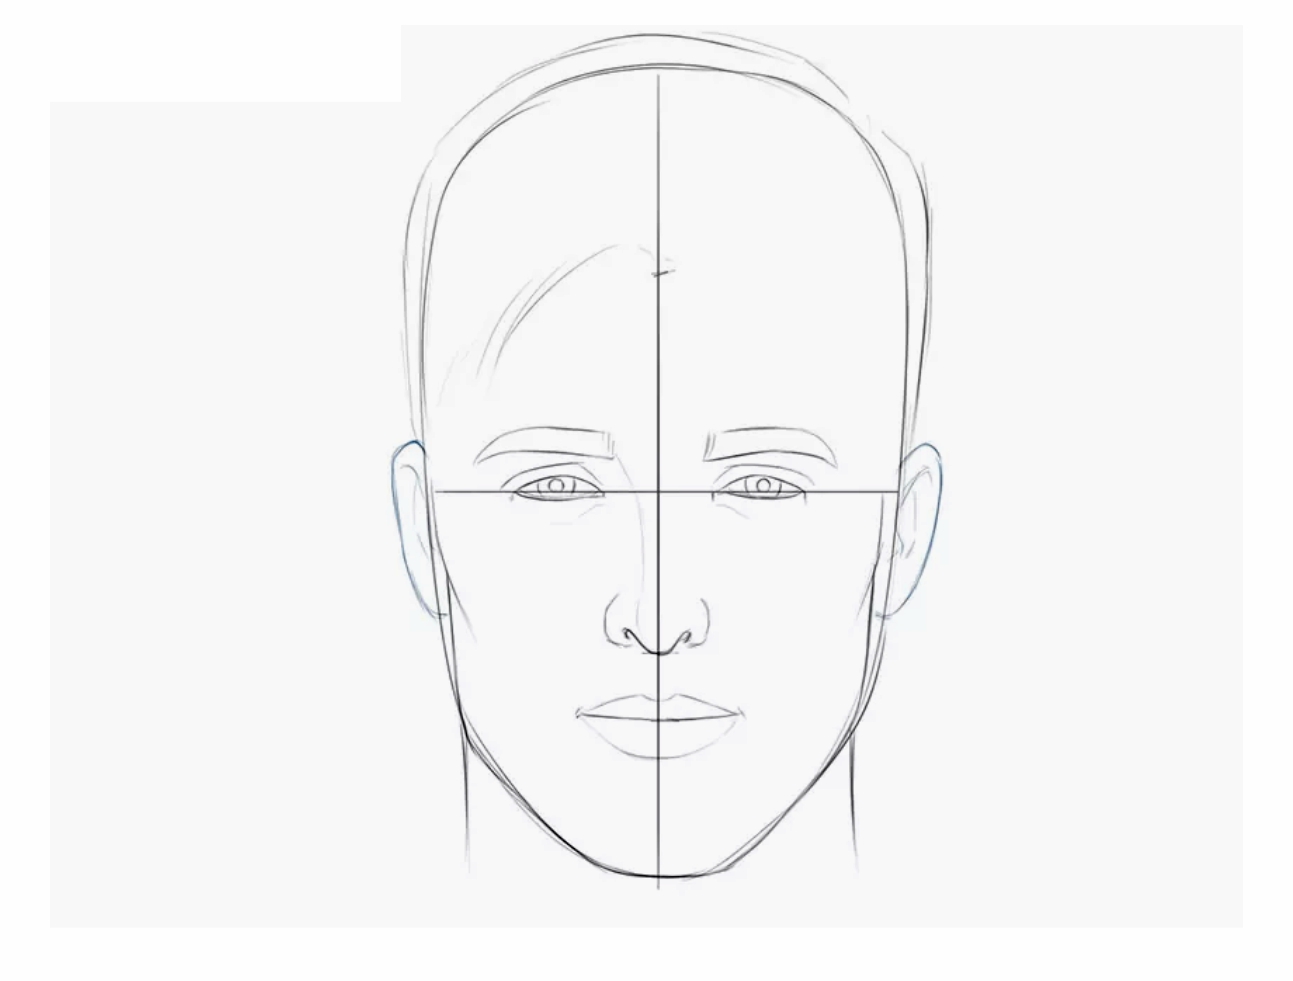 Урок рисования: Как нарисовать голову человека поэтапно карандашом. Шаг 9.